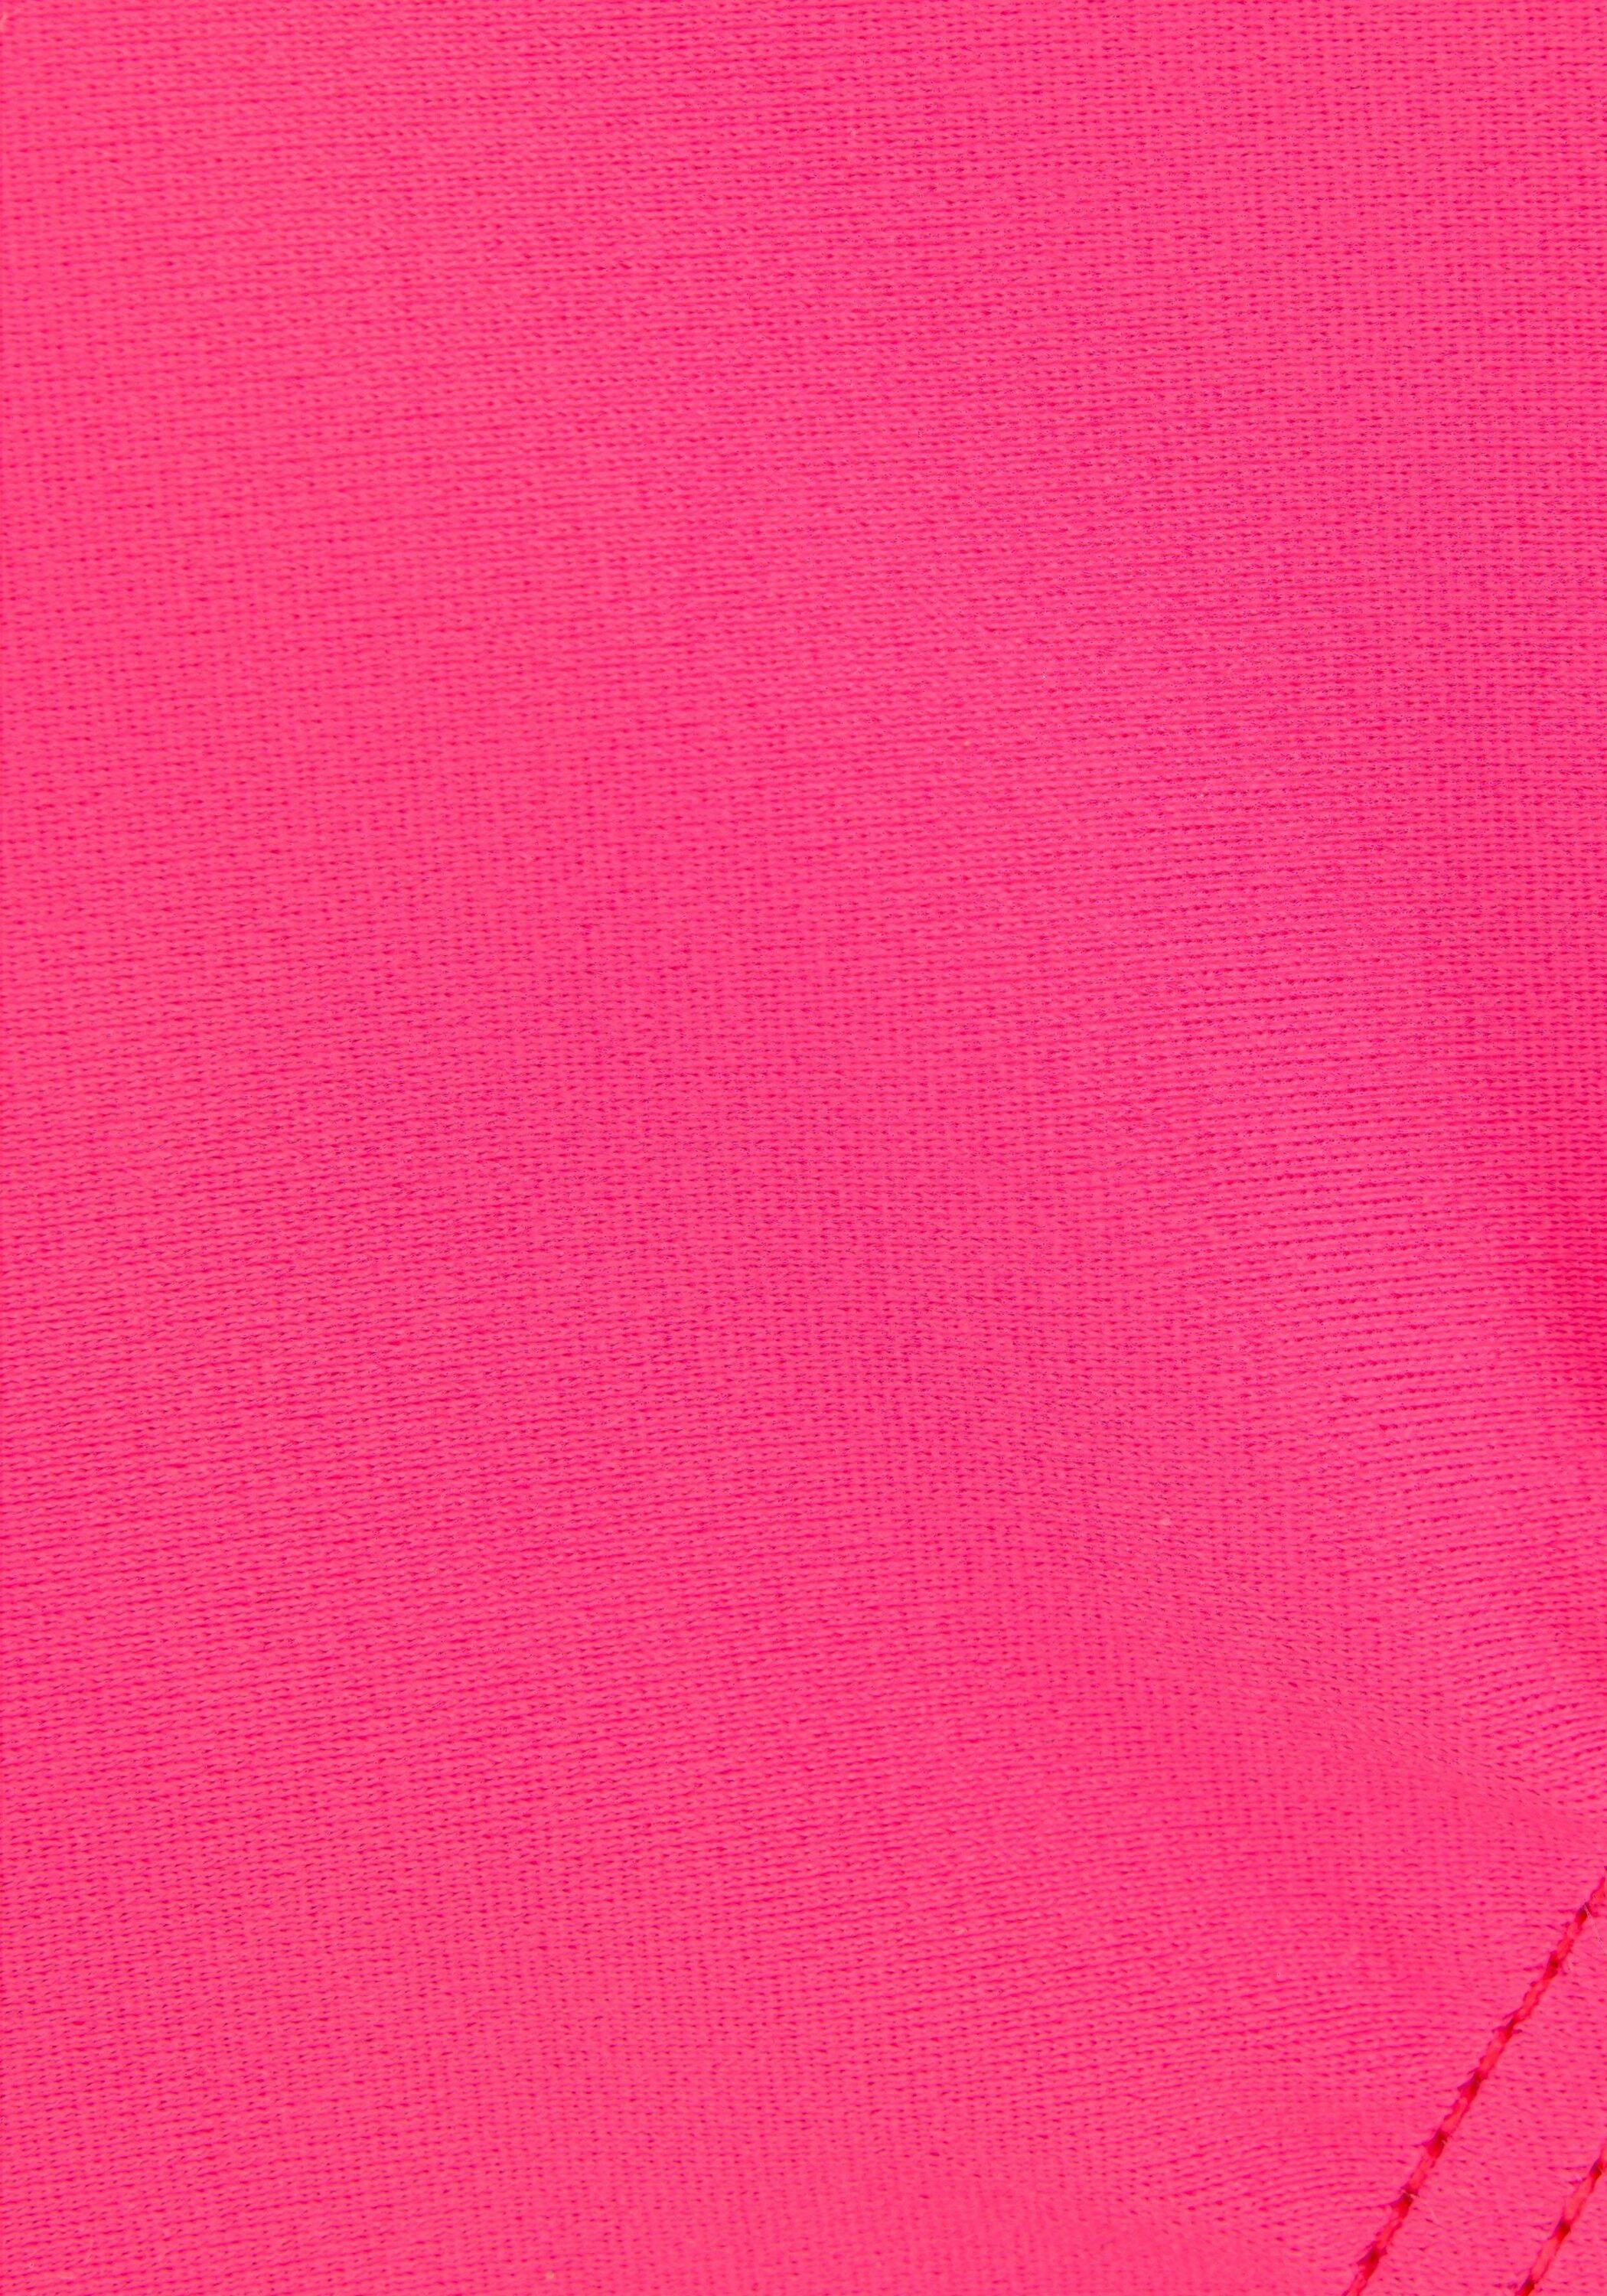 Bench Badeanzug Damen pink-schwarz im Online Shop von SportScheck kaufen